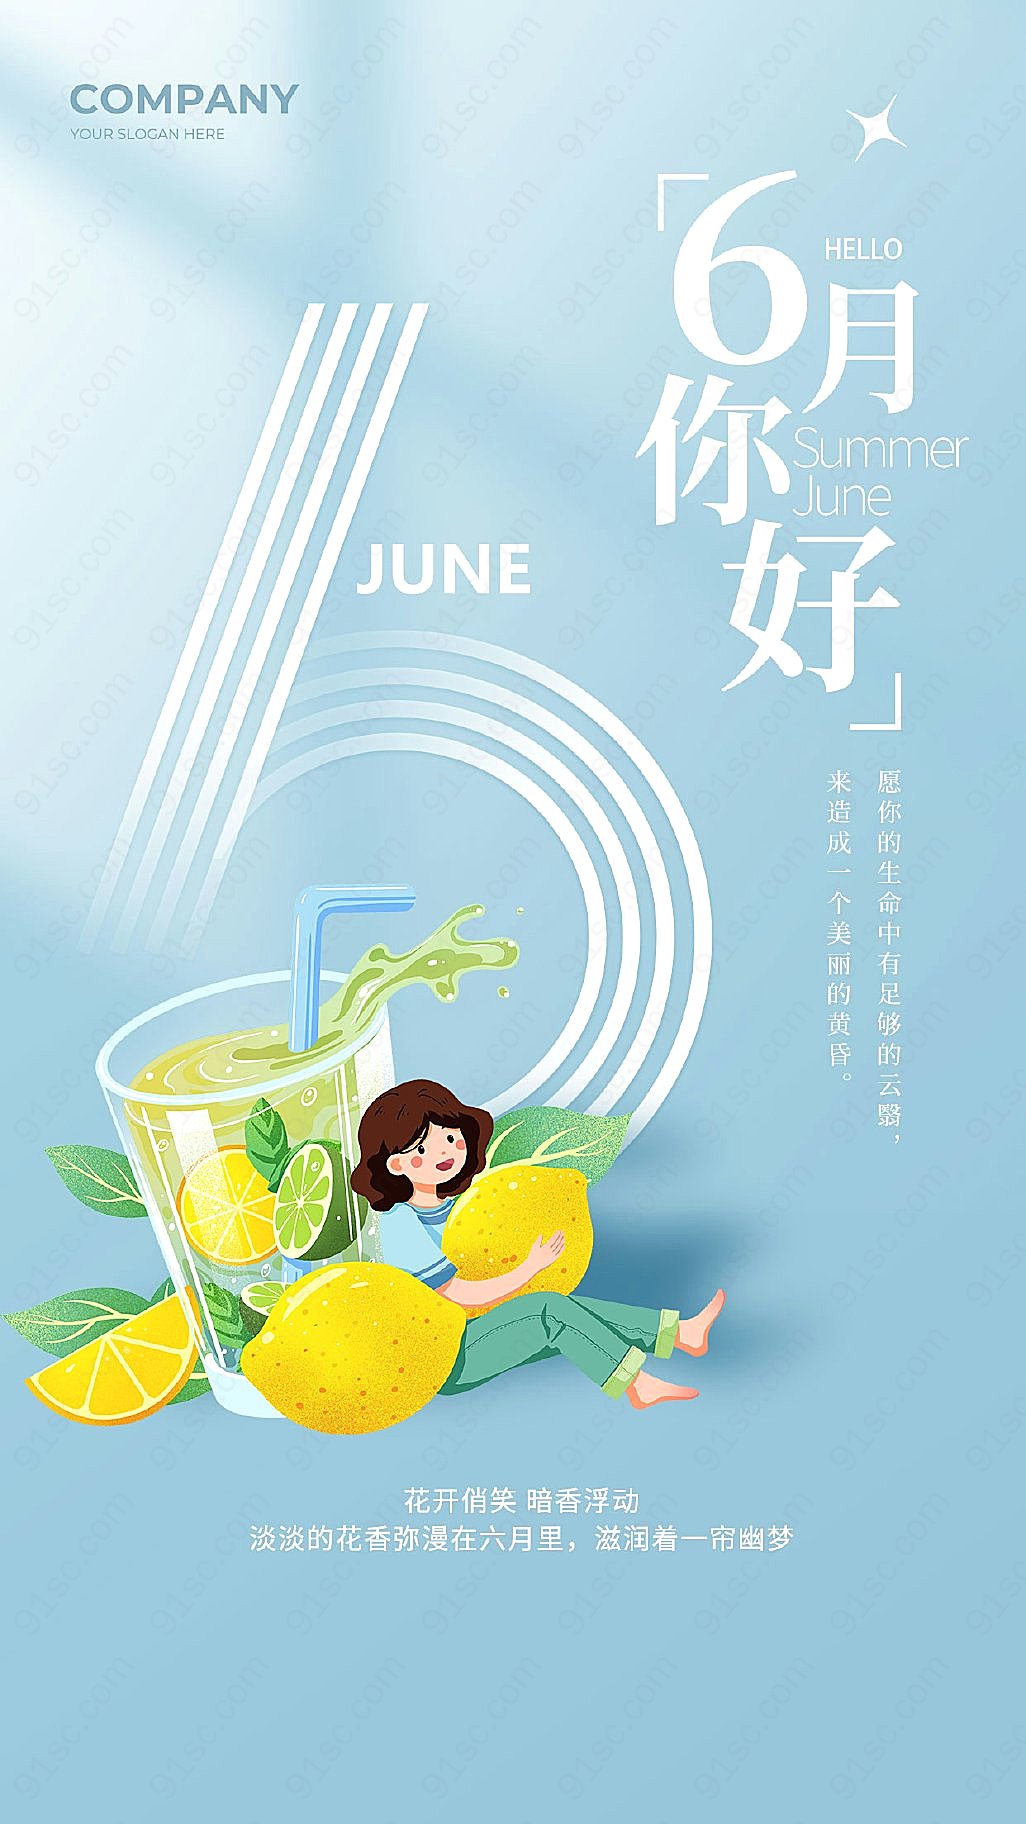 庆祝六月到来儿童节快乐简约风格手机宣传海报新媒体用图下载